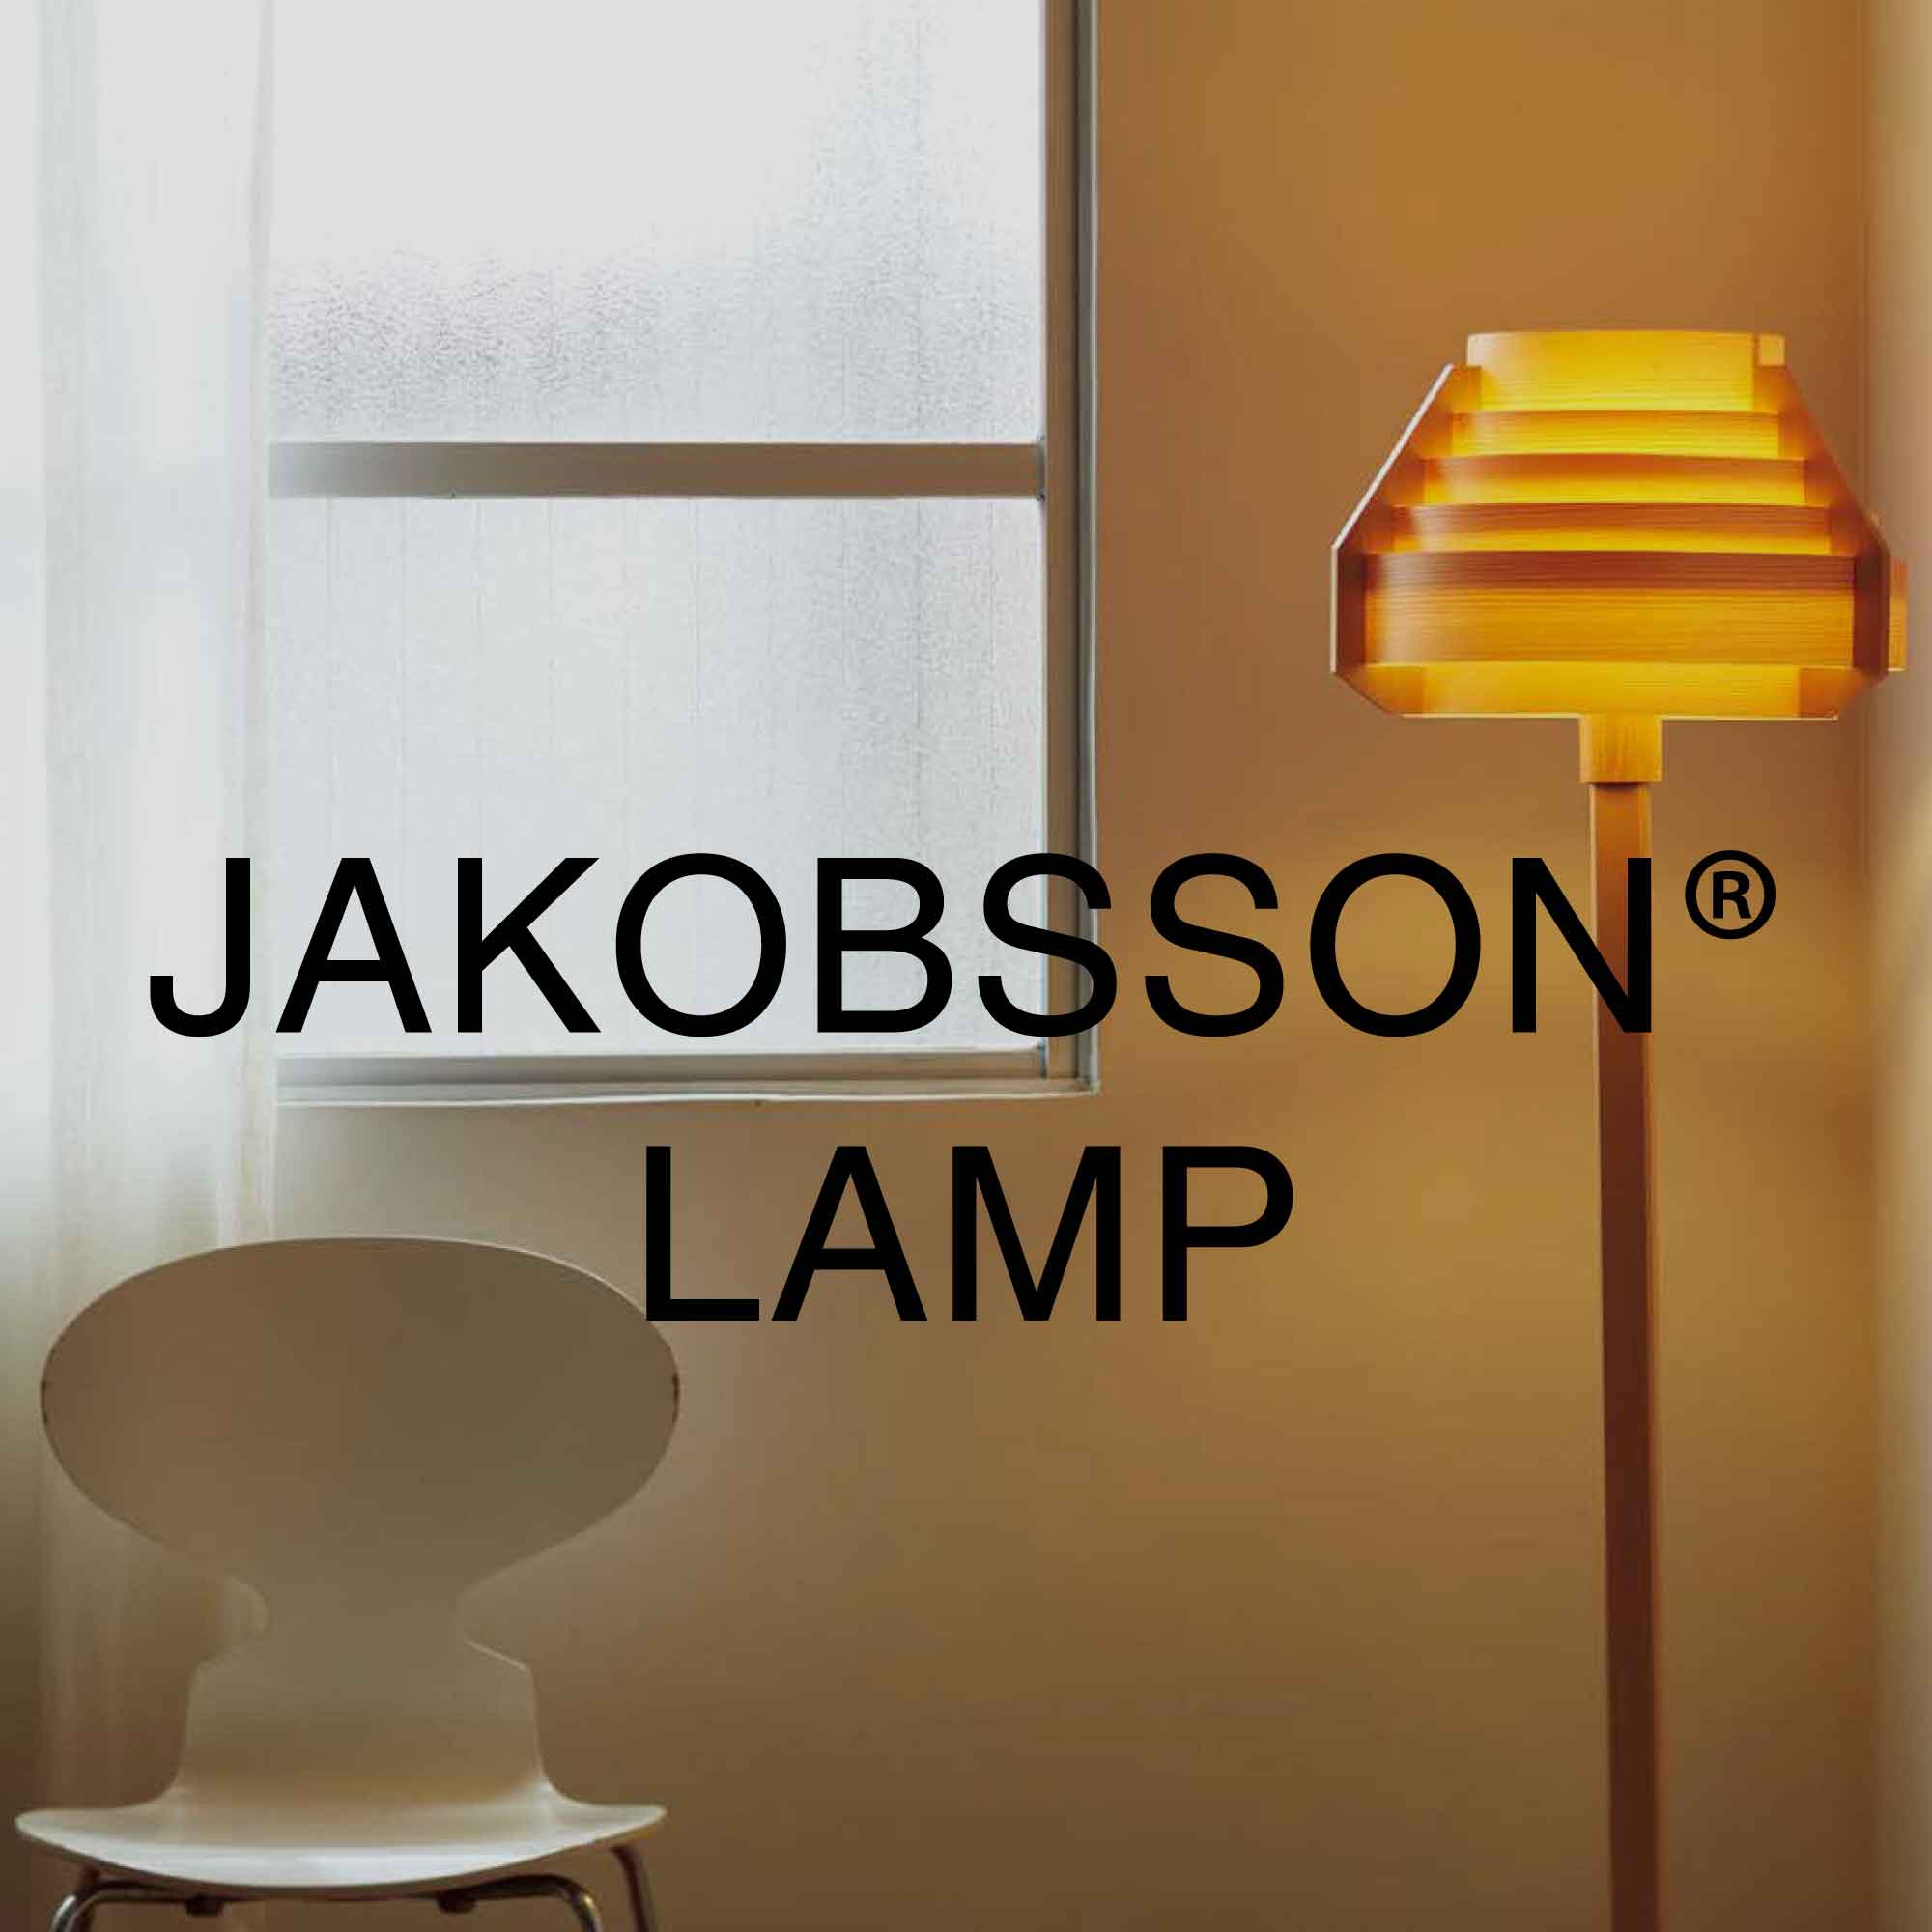 JAKOBSSON LAMP